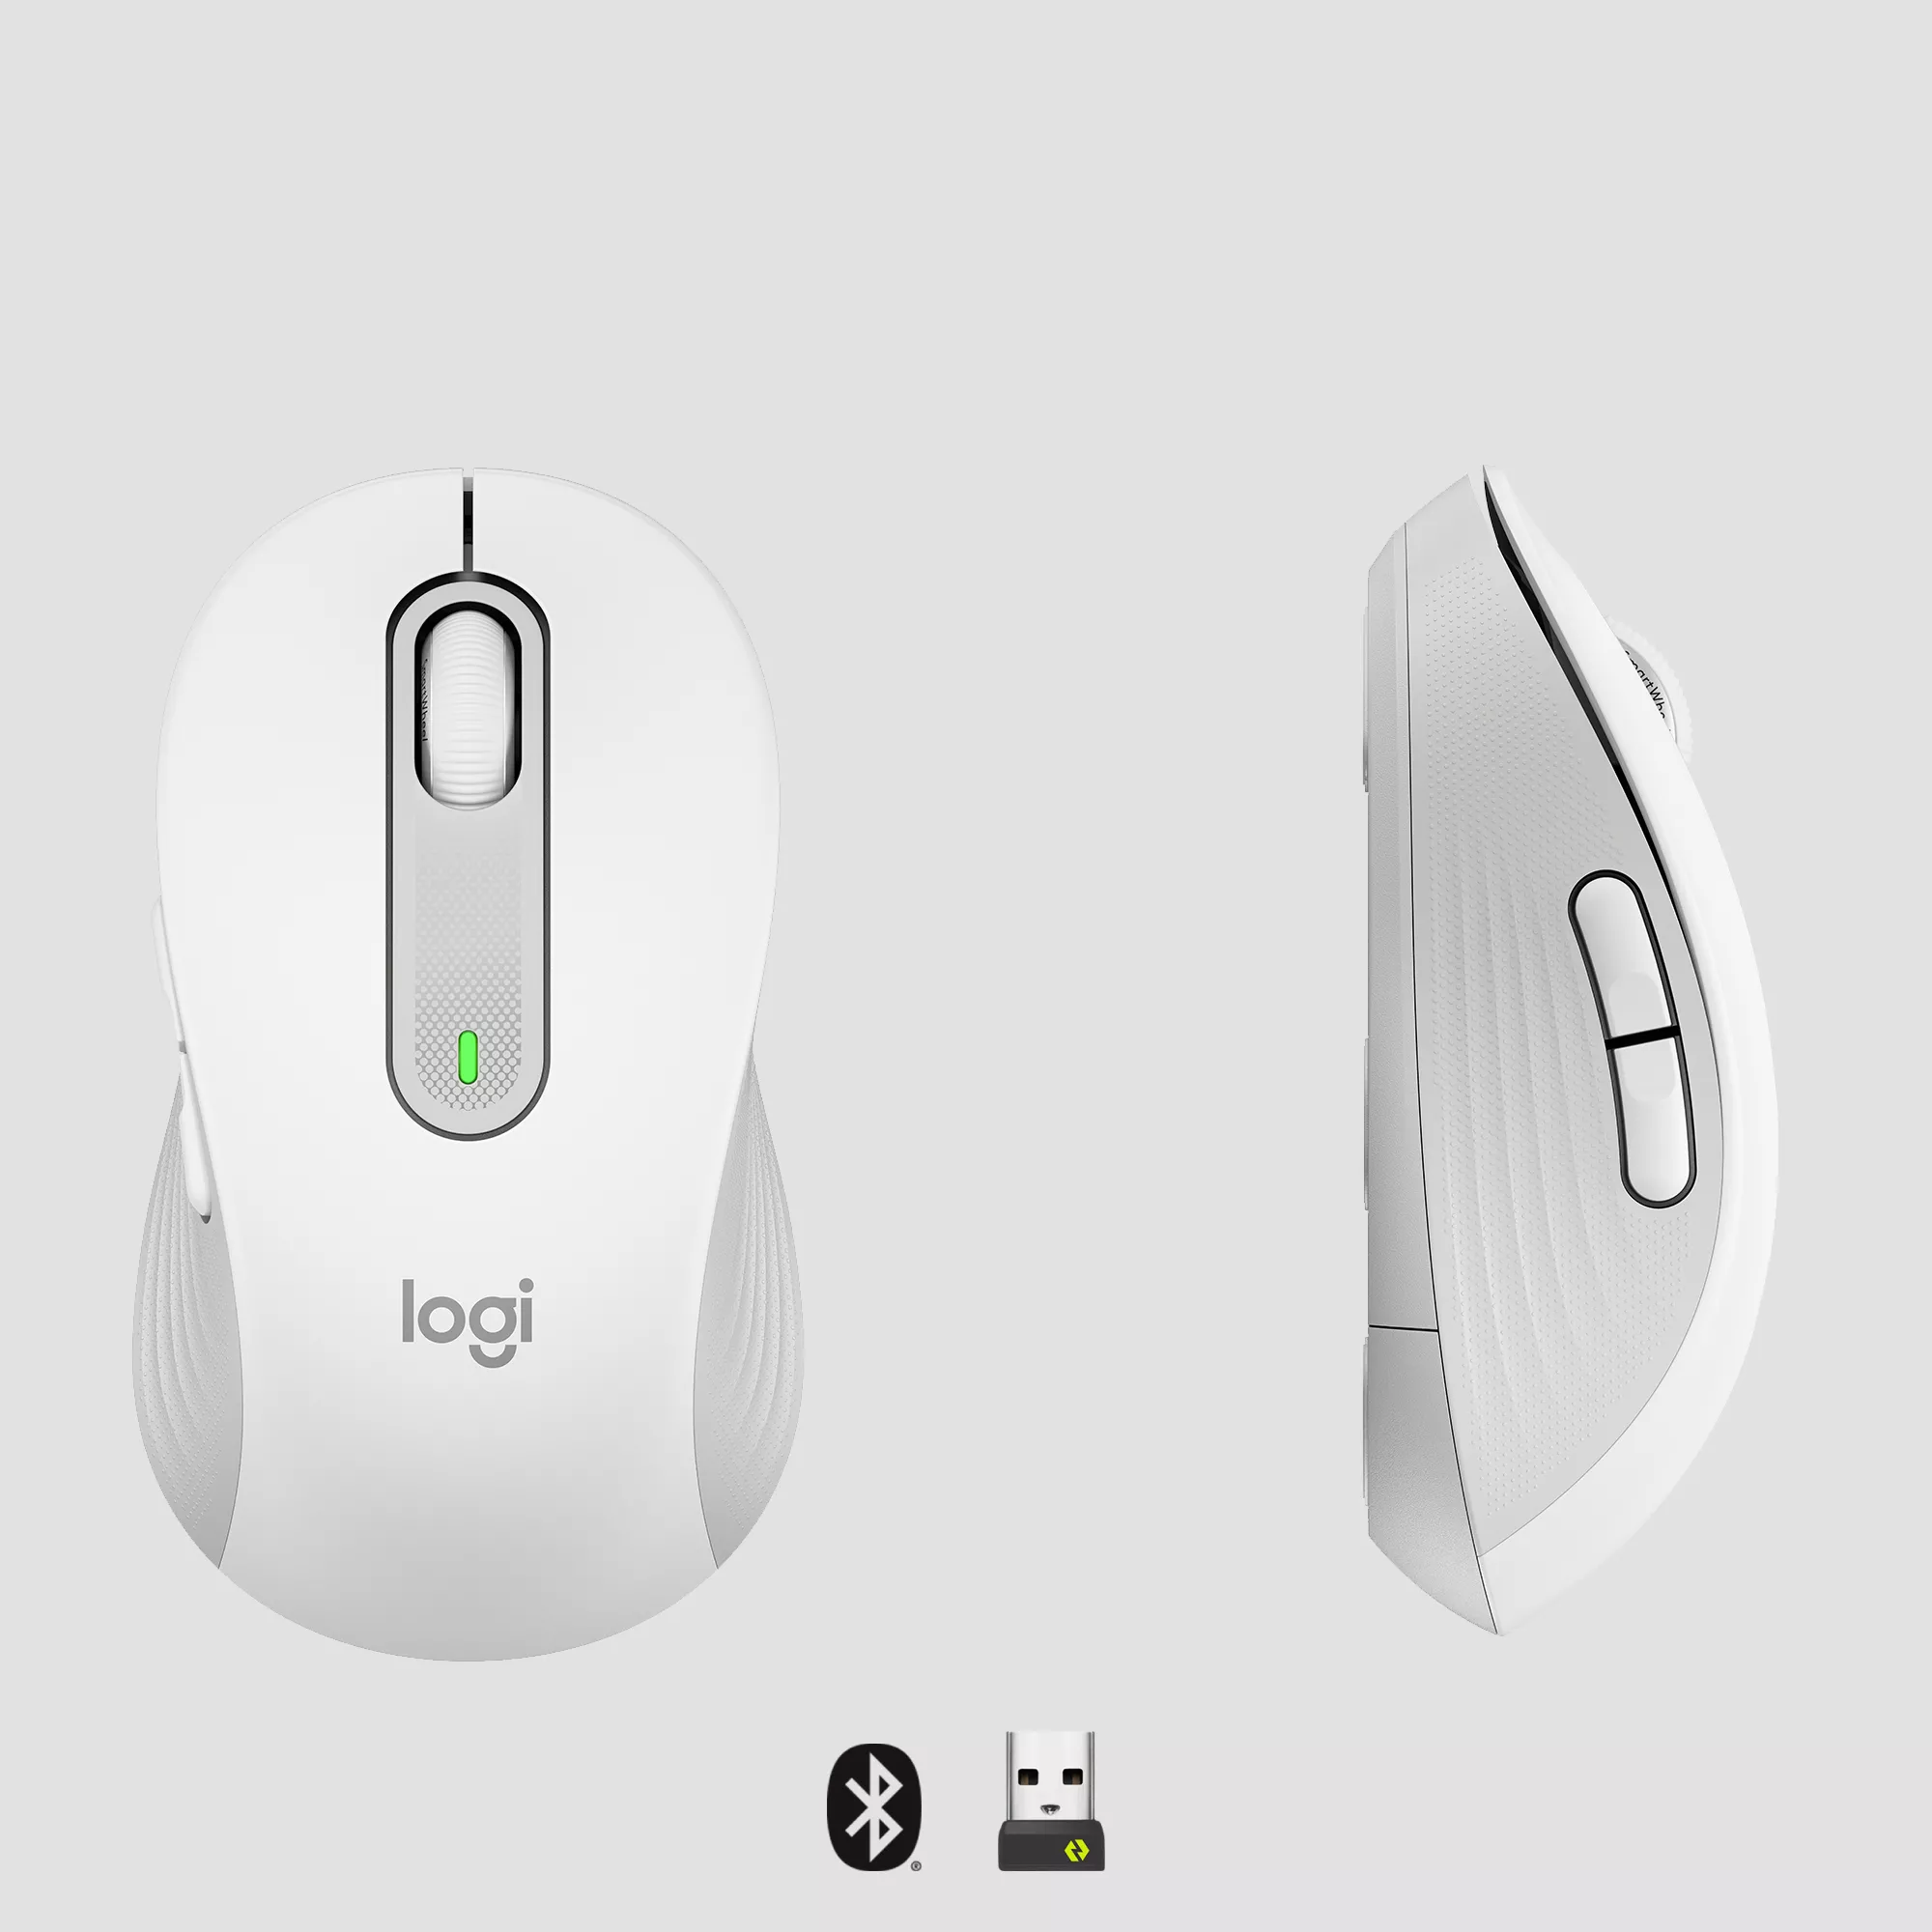 Vente LOGITECH Signature M650 Mouse optical 5 buttons wireless Logitech au meilleur prix - visuel 6